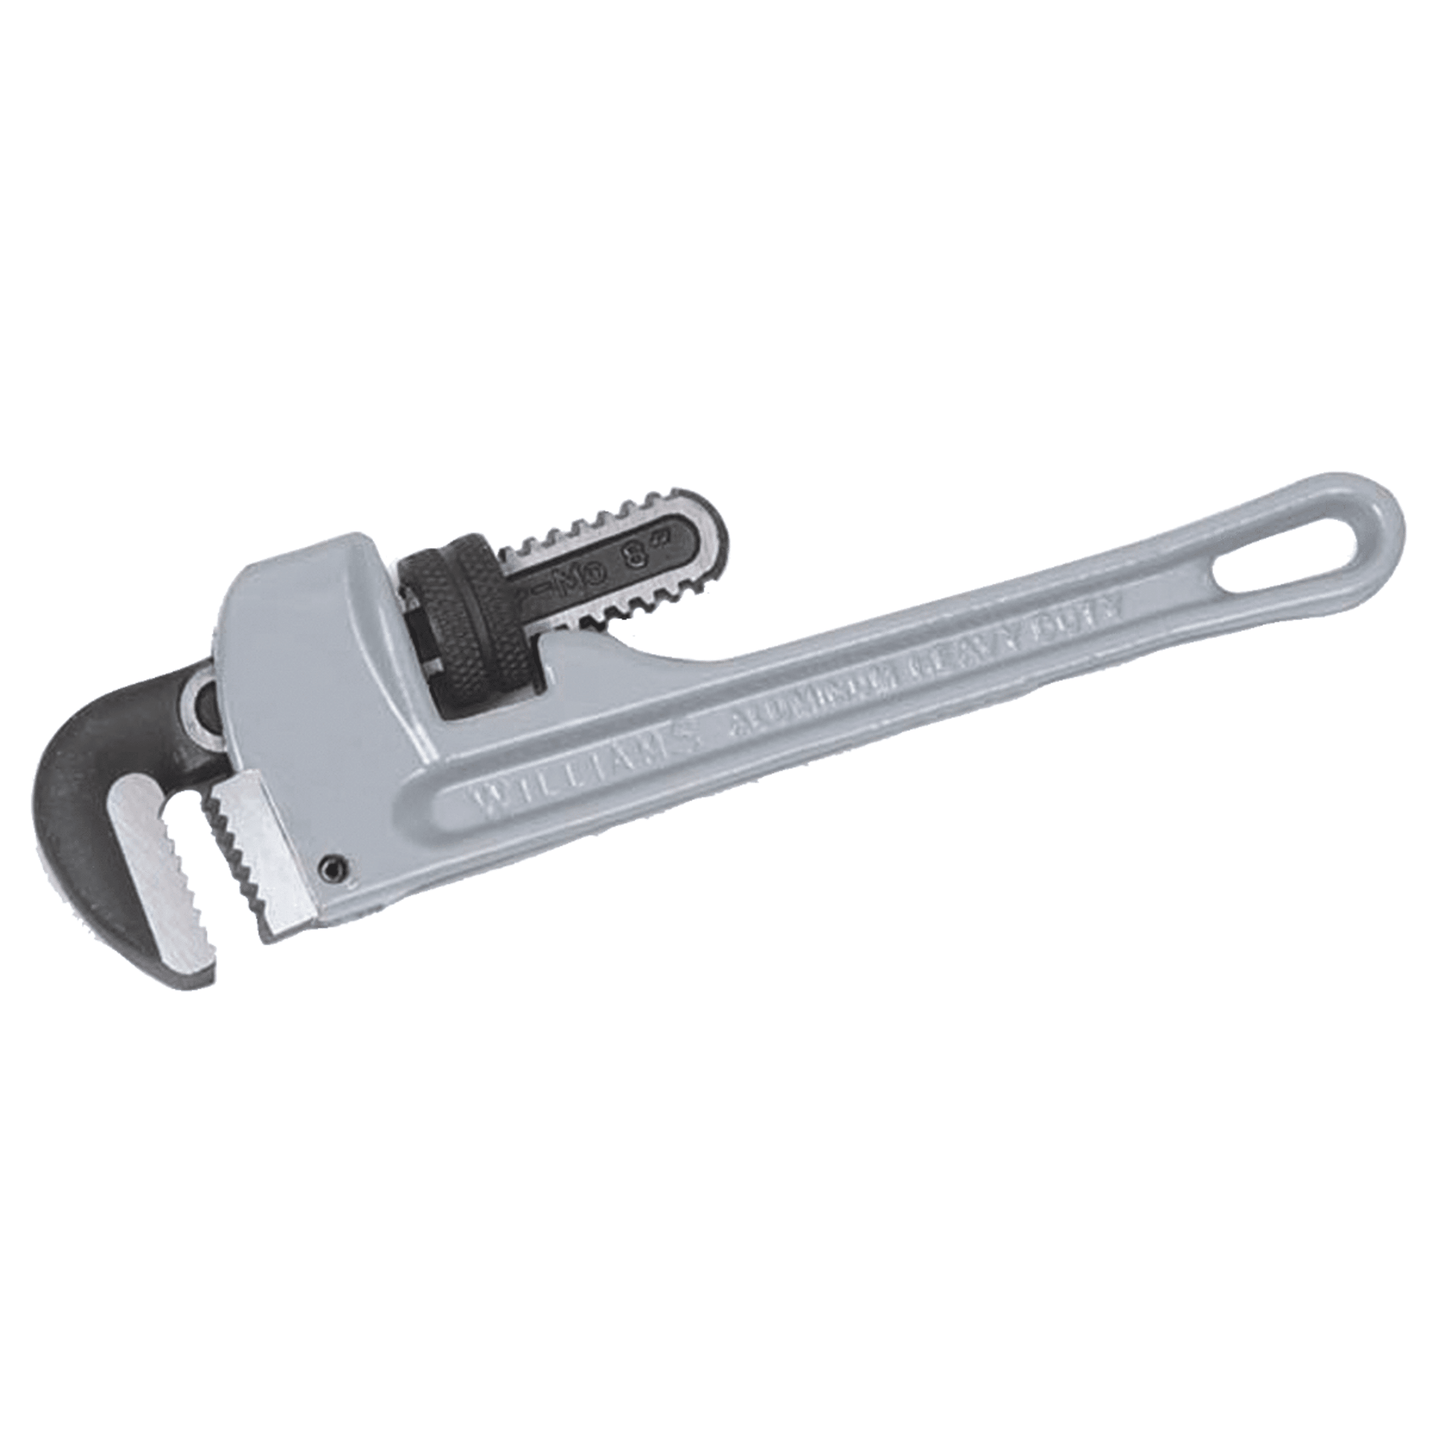 Williams 13506, 14" Pipe Wrench Aluminium , Heavy Duty